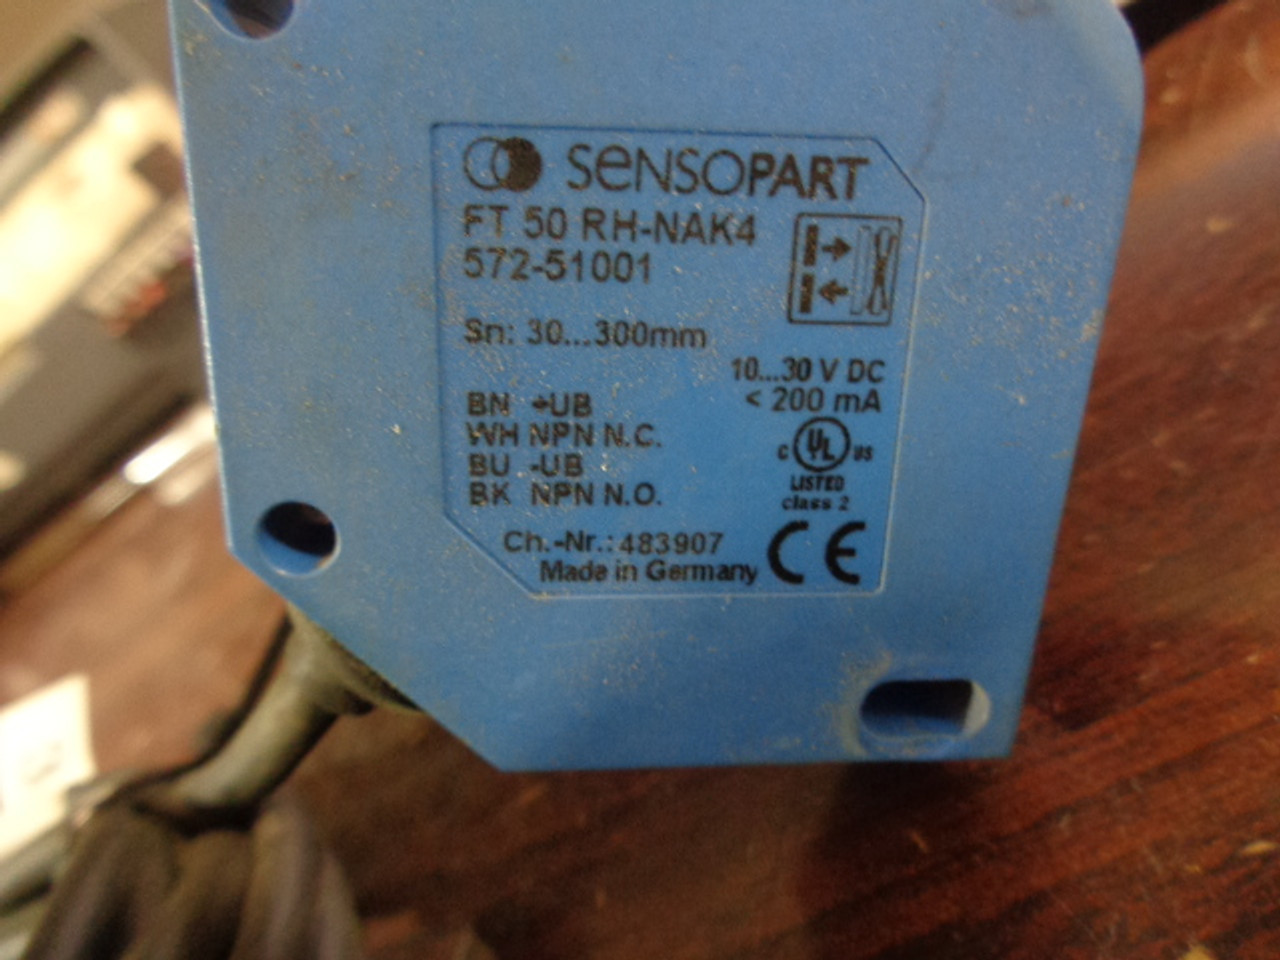 Sensopart FT50RH-NAK4 Sensor3